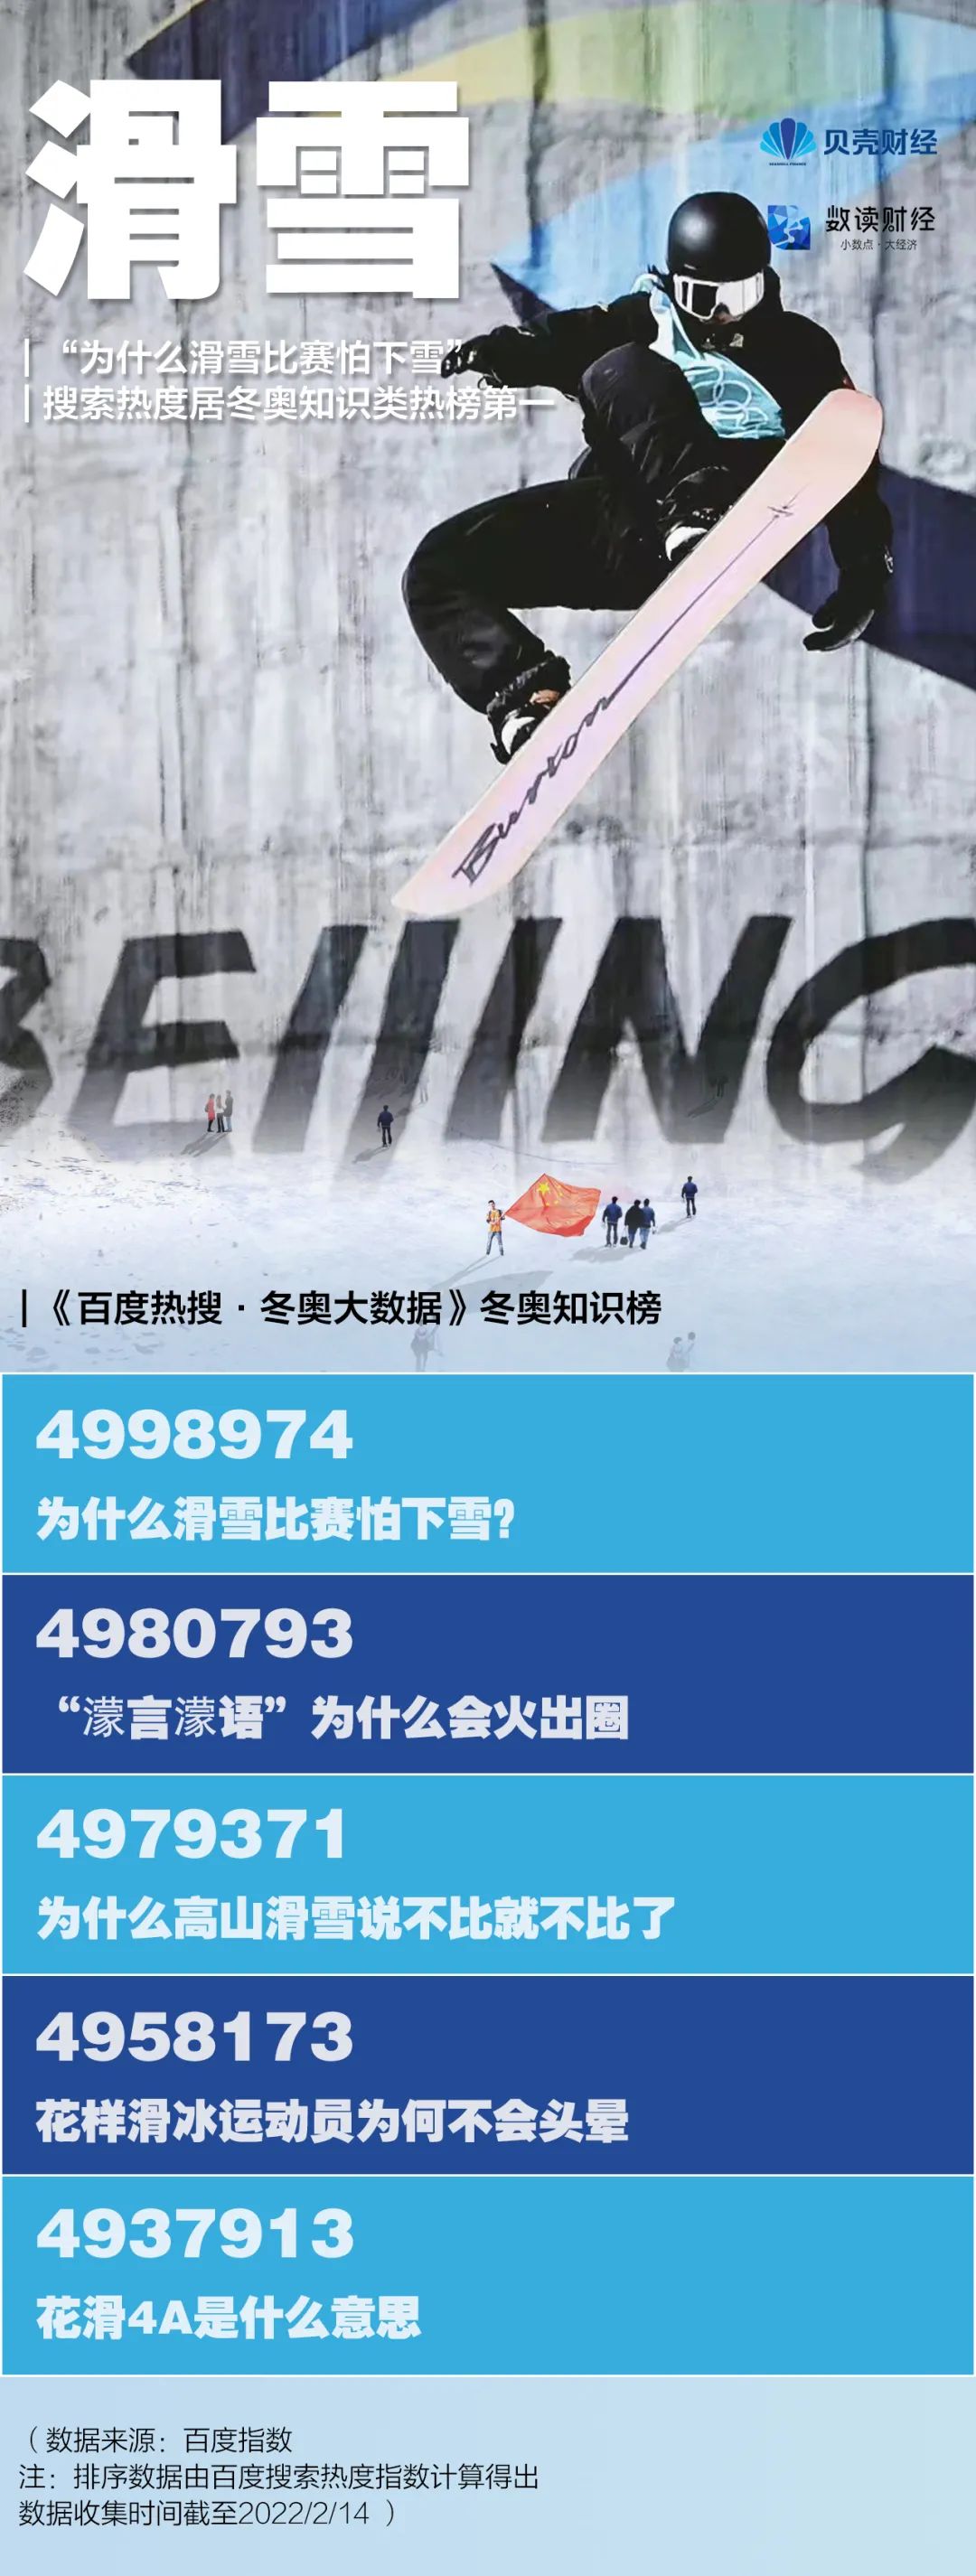 北京冬奥会全球收视率预计超20亿插图5